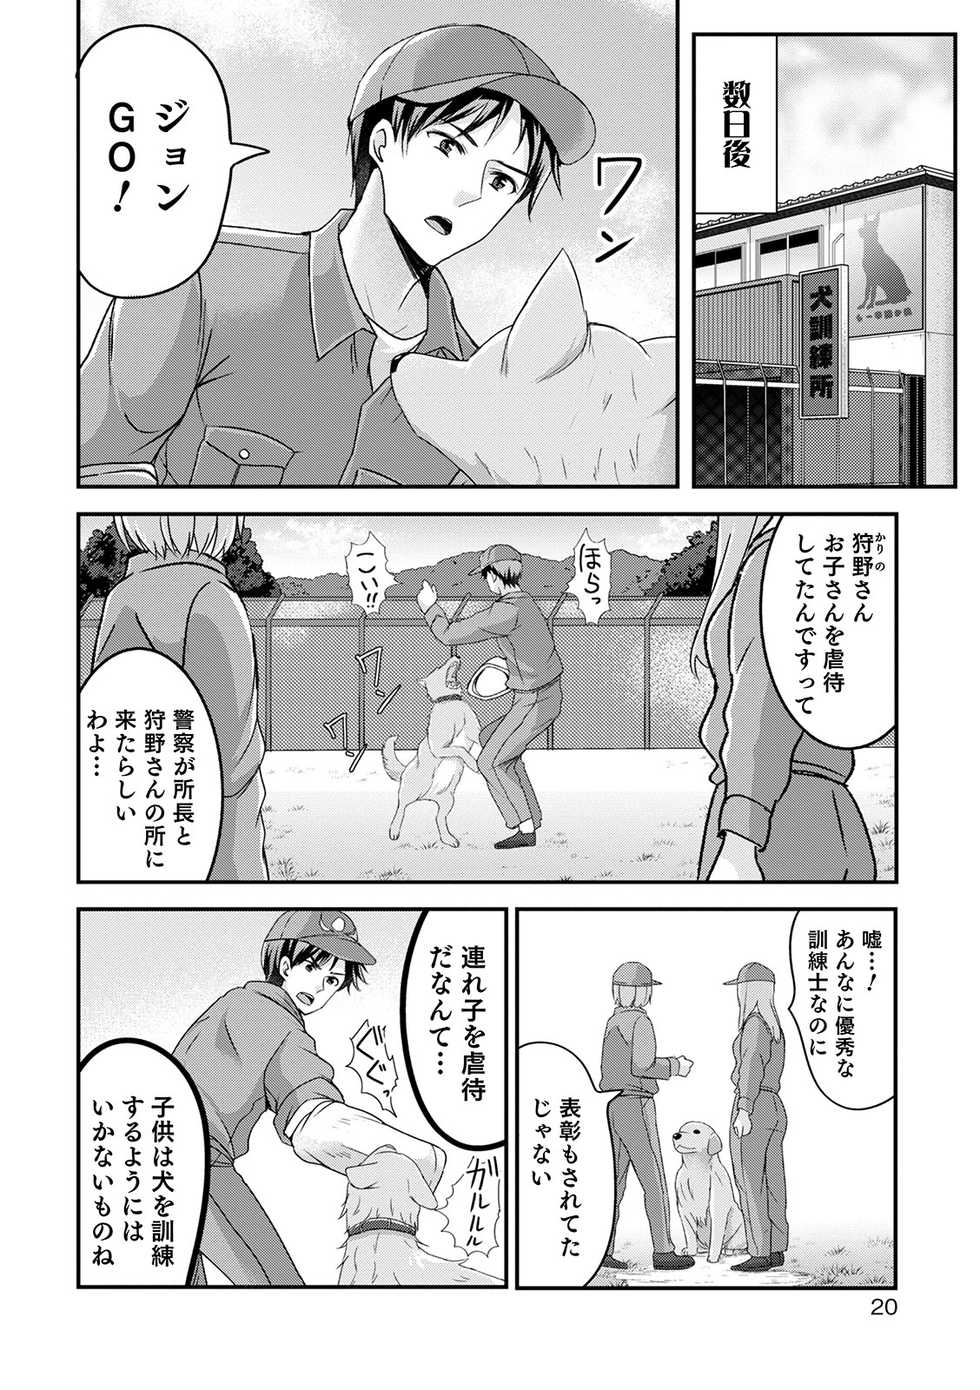 [Anthology] Otokonoko Heaven's Door 13 [Digital] - Page 20